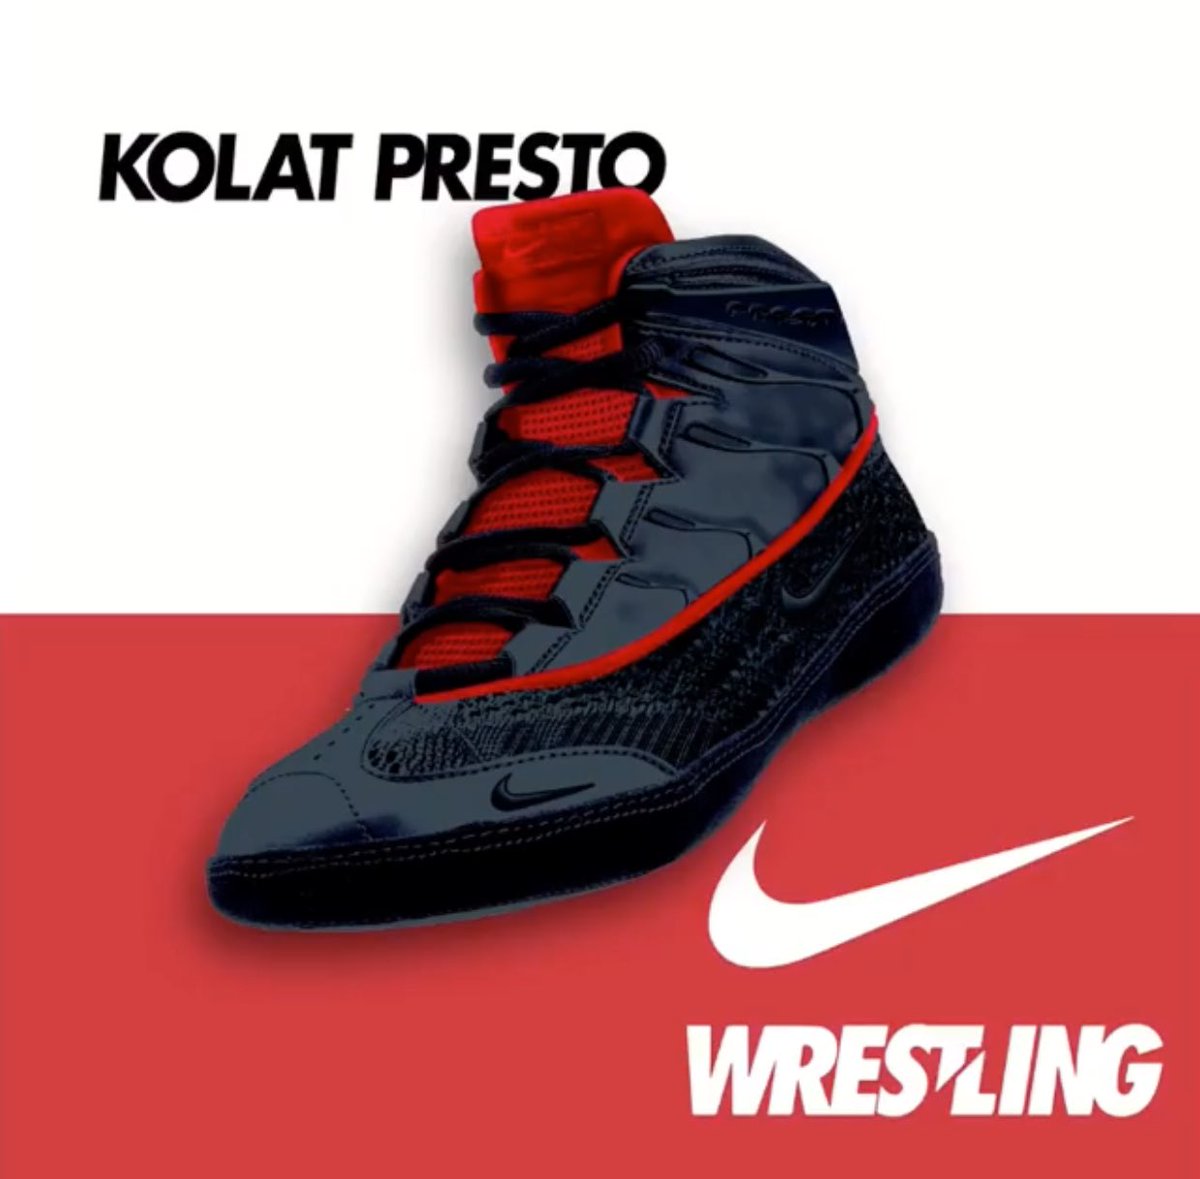 kolat presto wrestling shoes